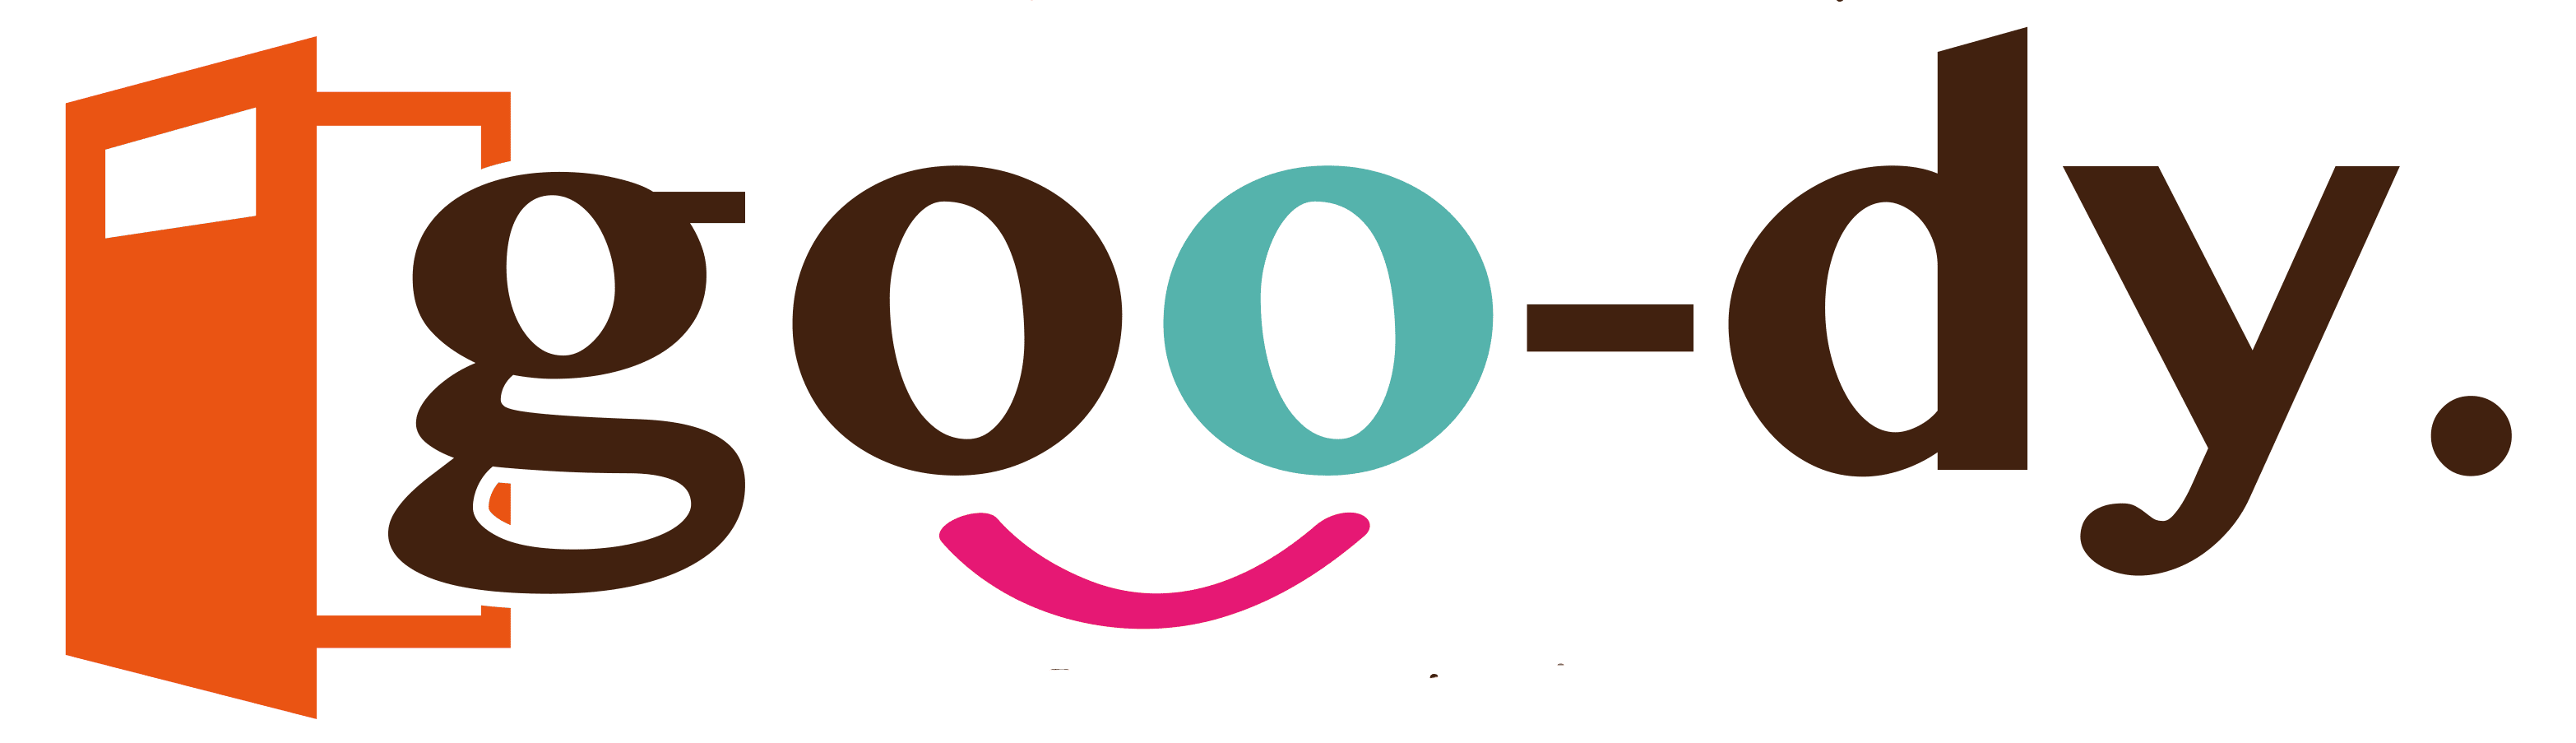 goo-dyロゴ